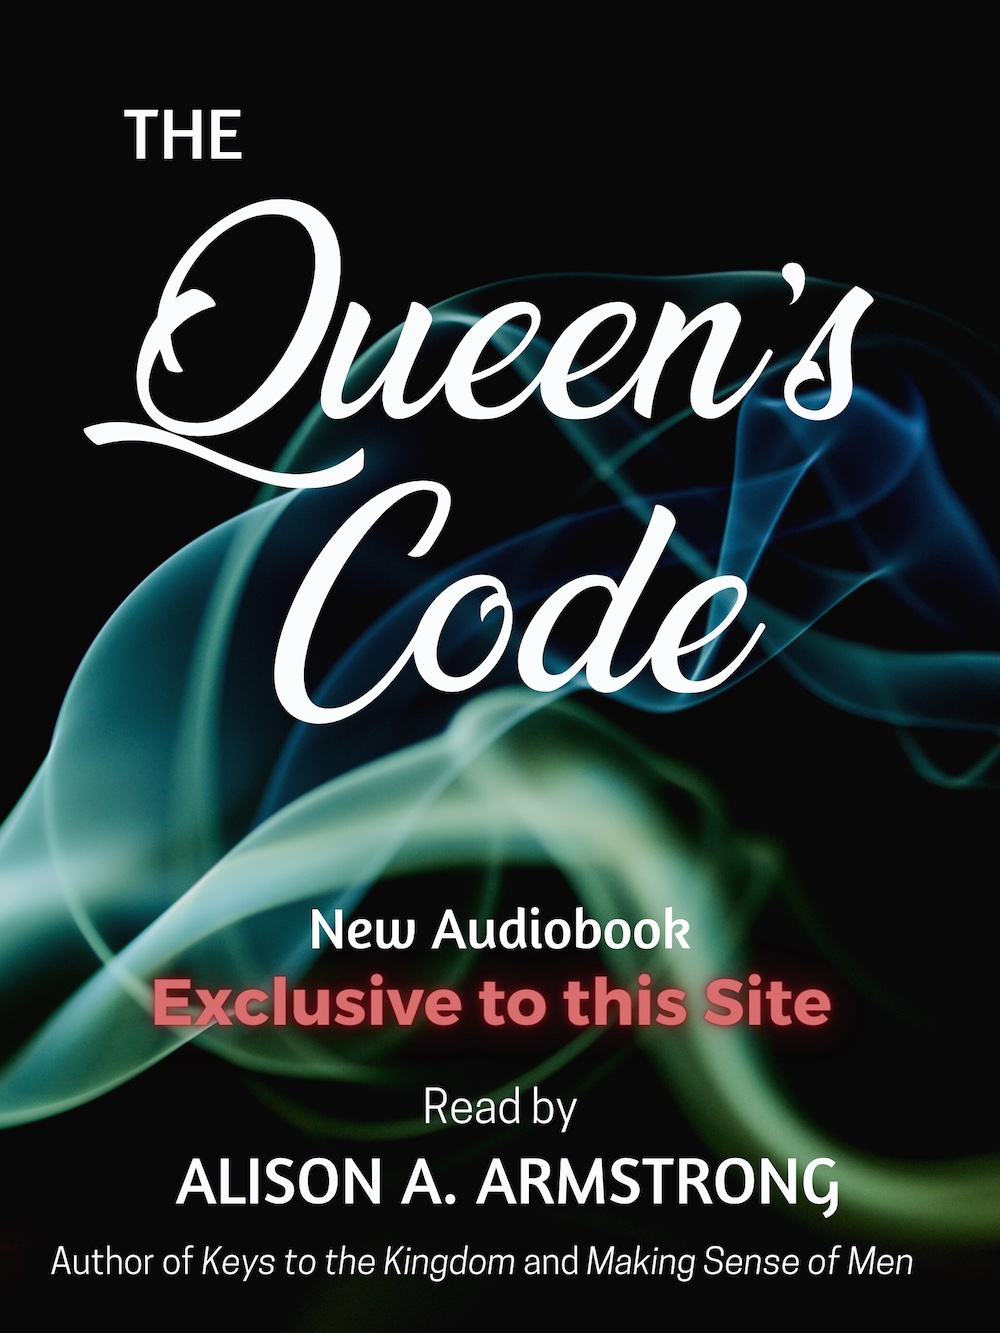 The Queen's Code Audiobook is Here